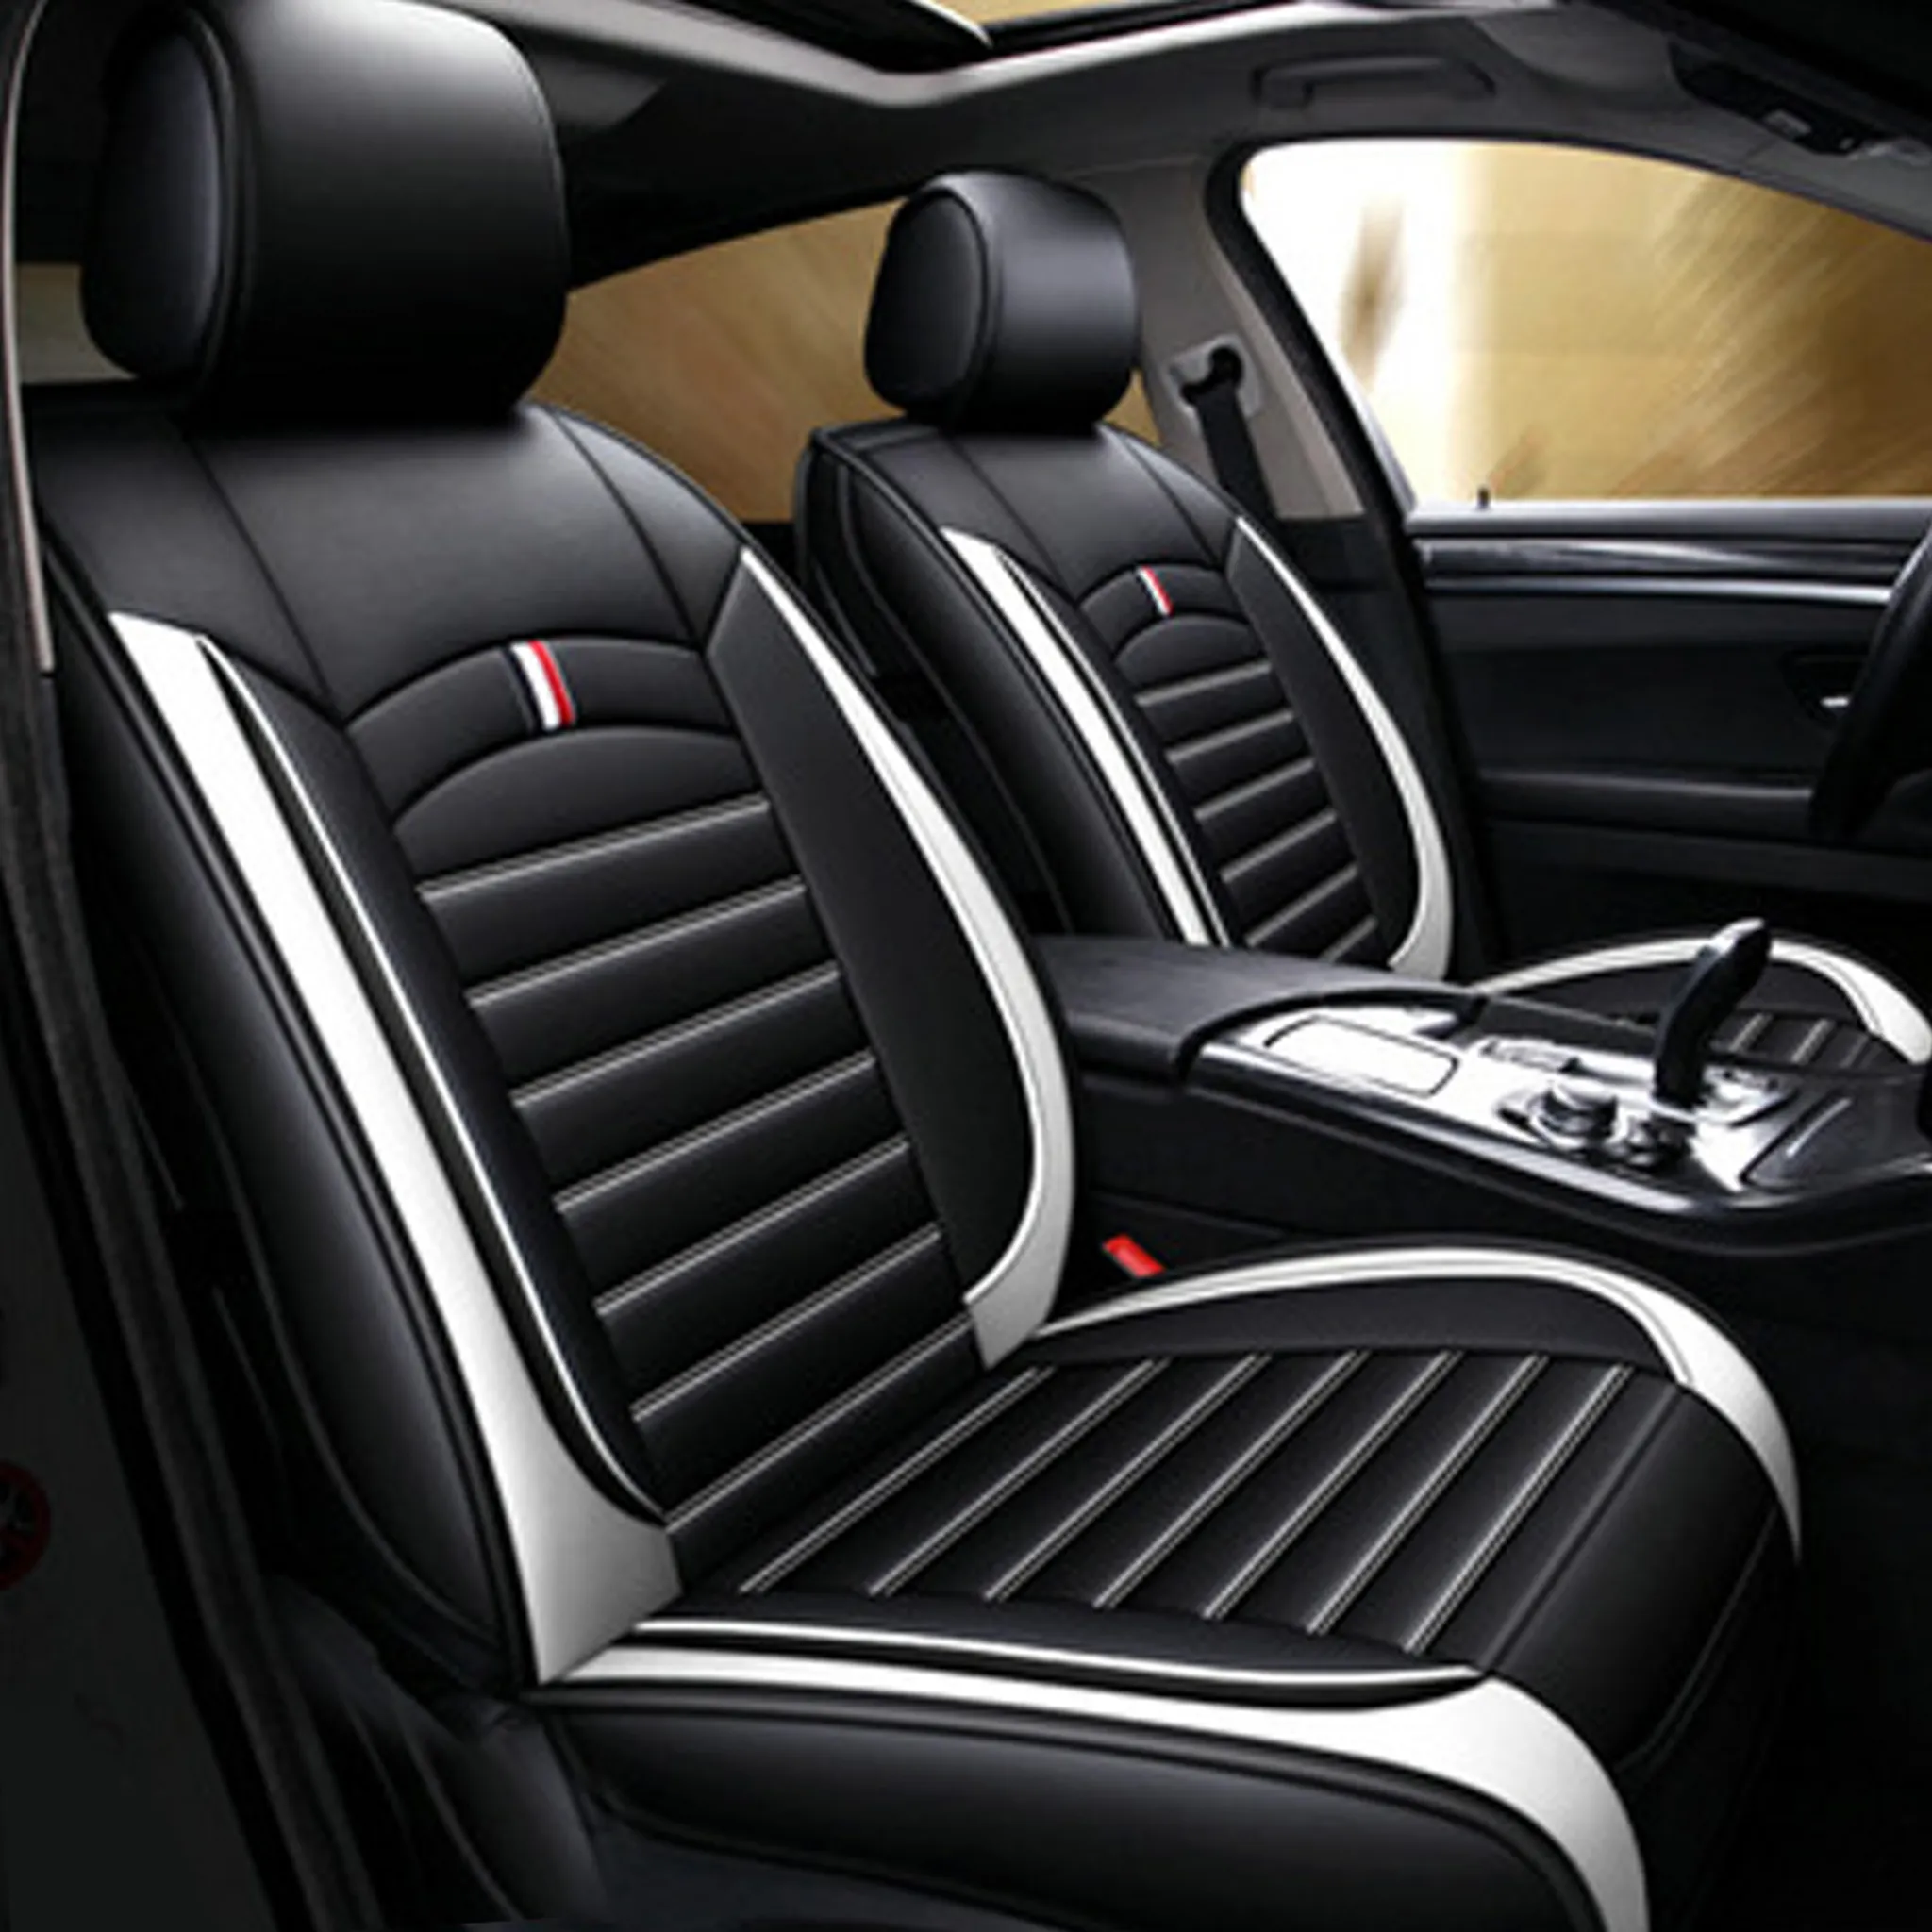 2 Stück Universal Echt Leder Auto Sitzbezüge schwarz für fast alle PKW,  Fahrersitz und Beifahrersitz, Leder